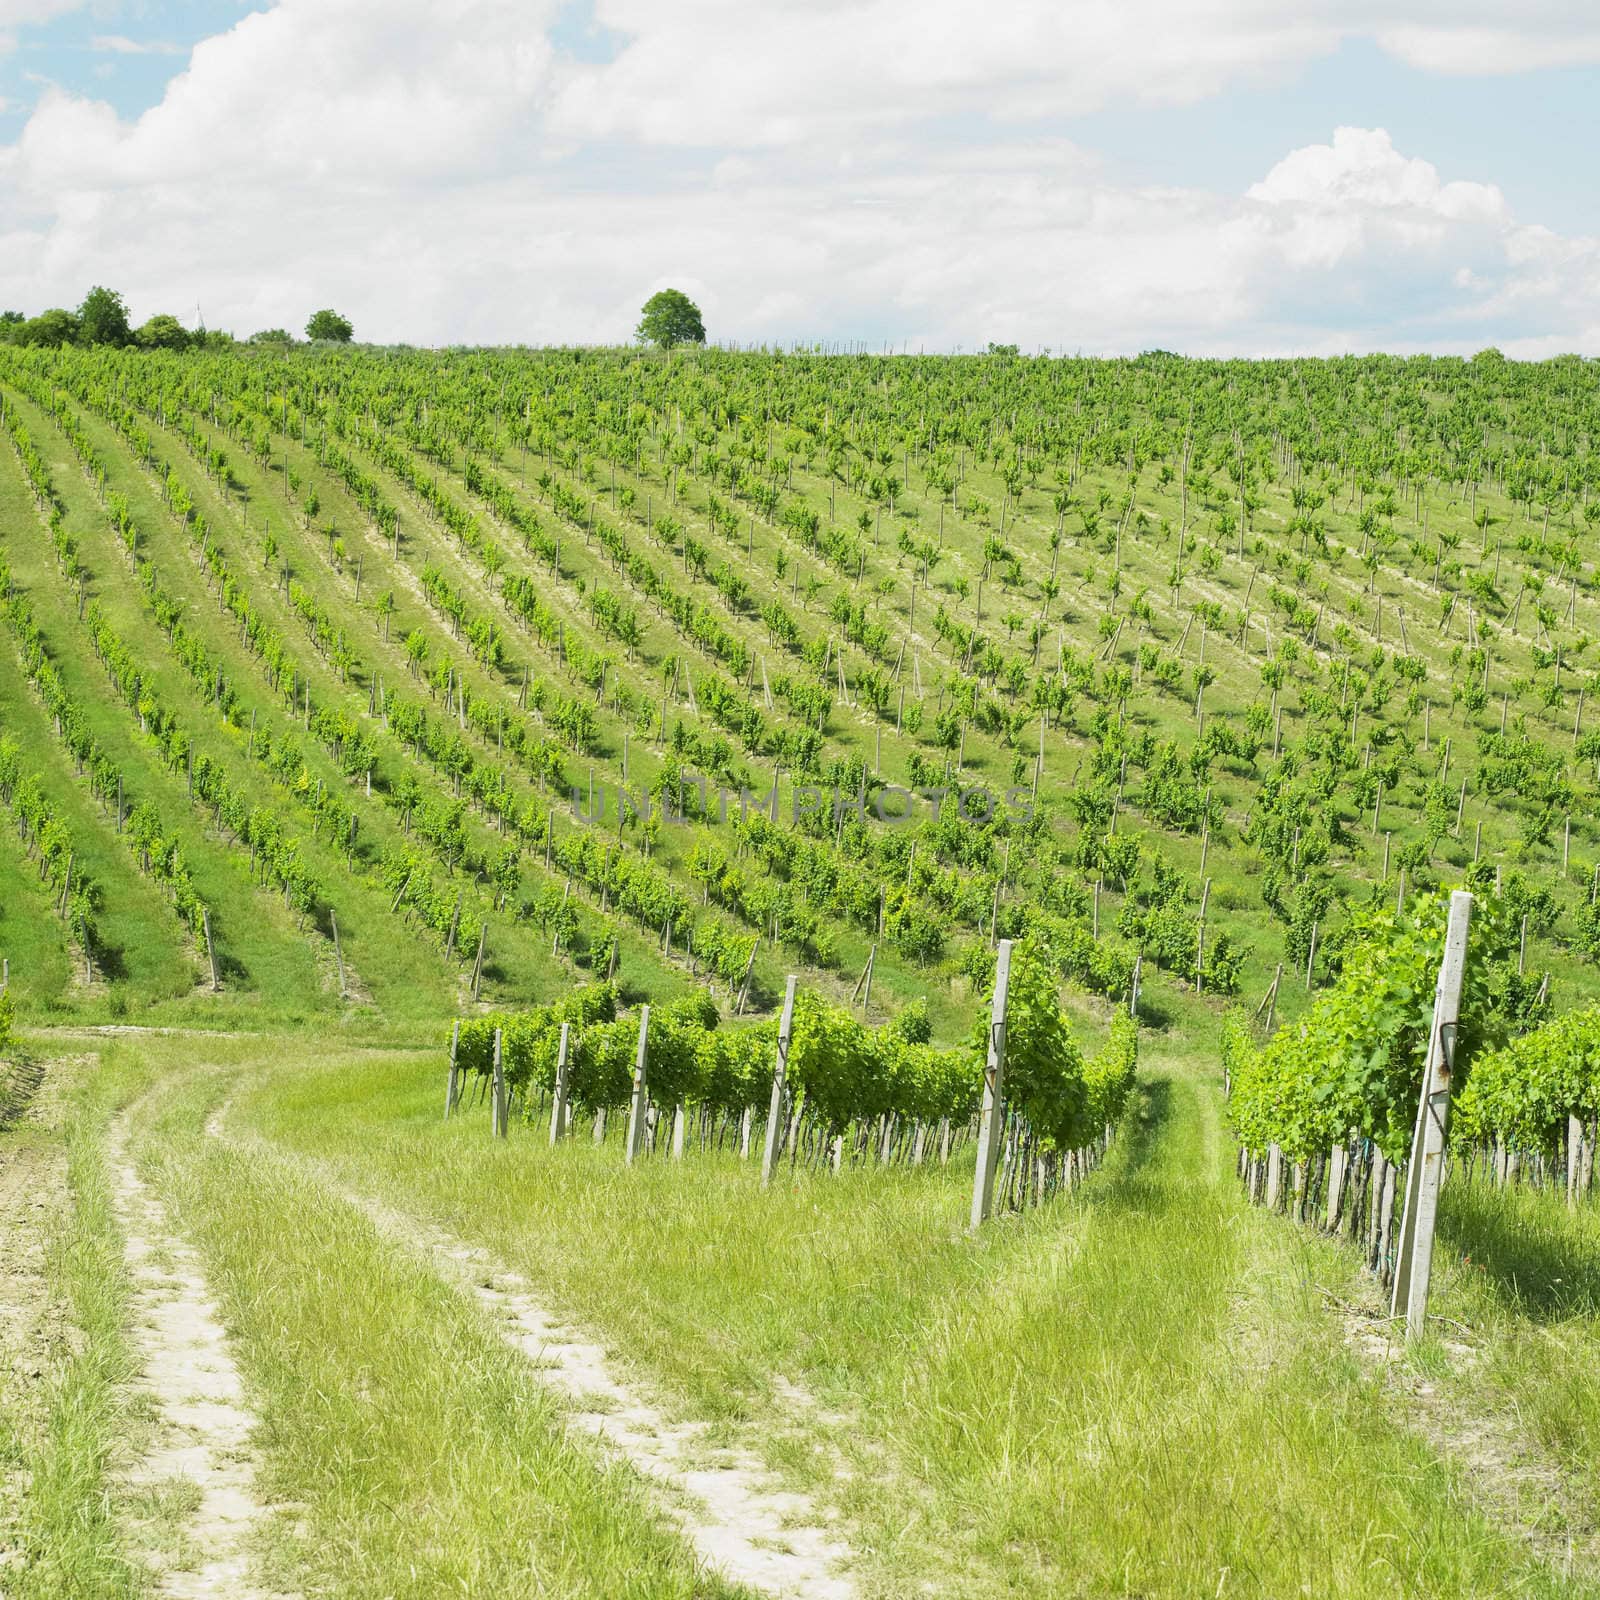 vineyard, Palava, Czech Republic by phbcz